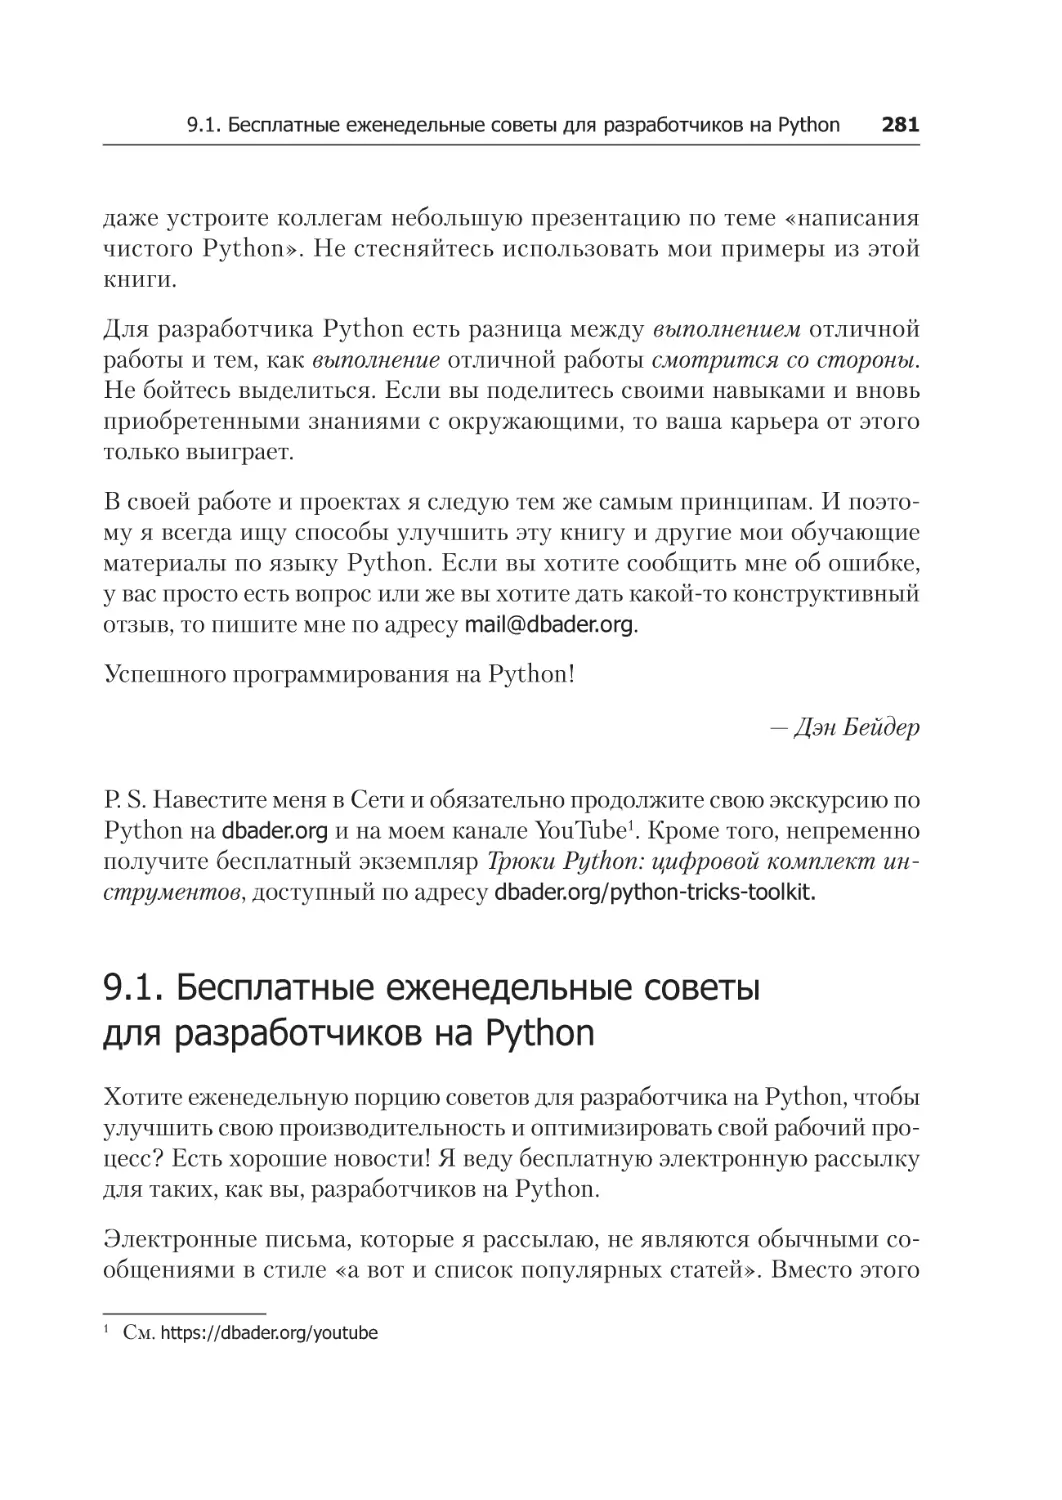 9.1. Бесплатные еженедельные советы для разработчиков на Python